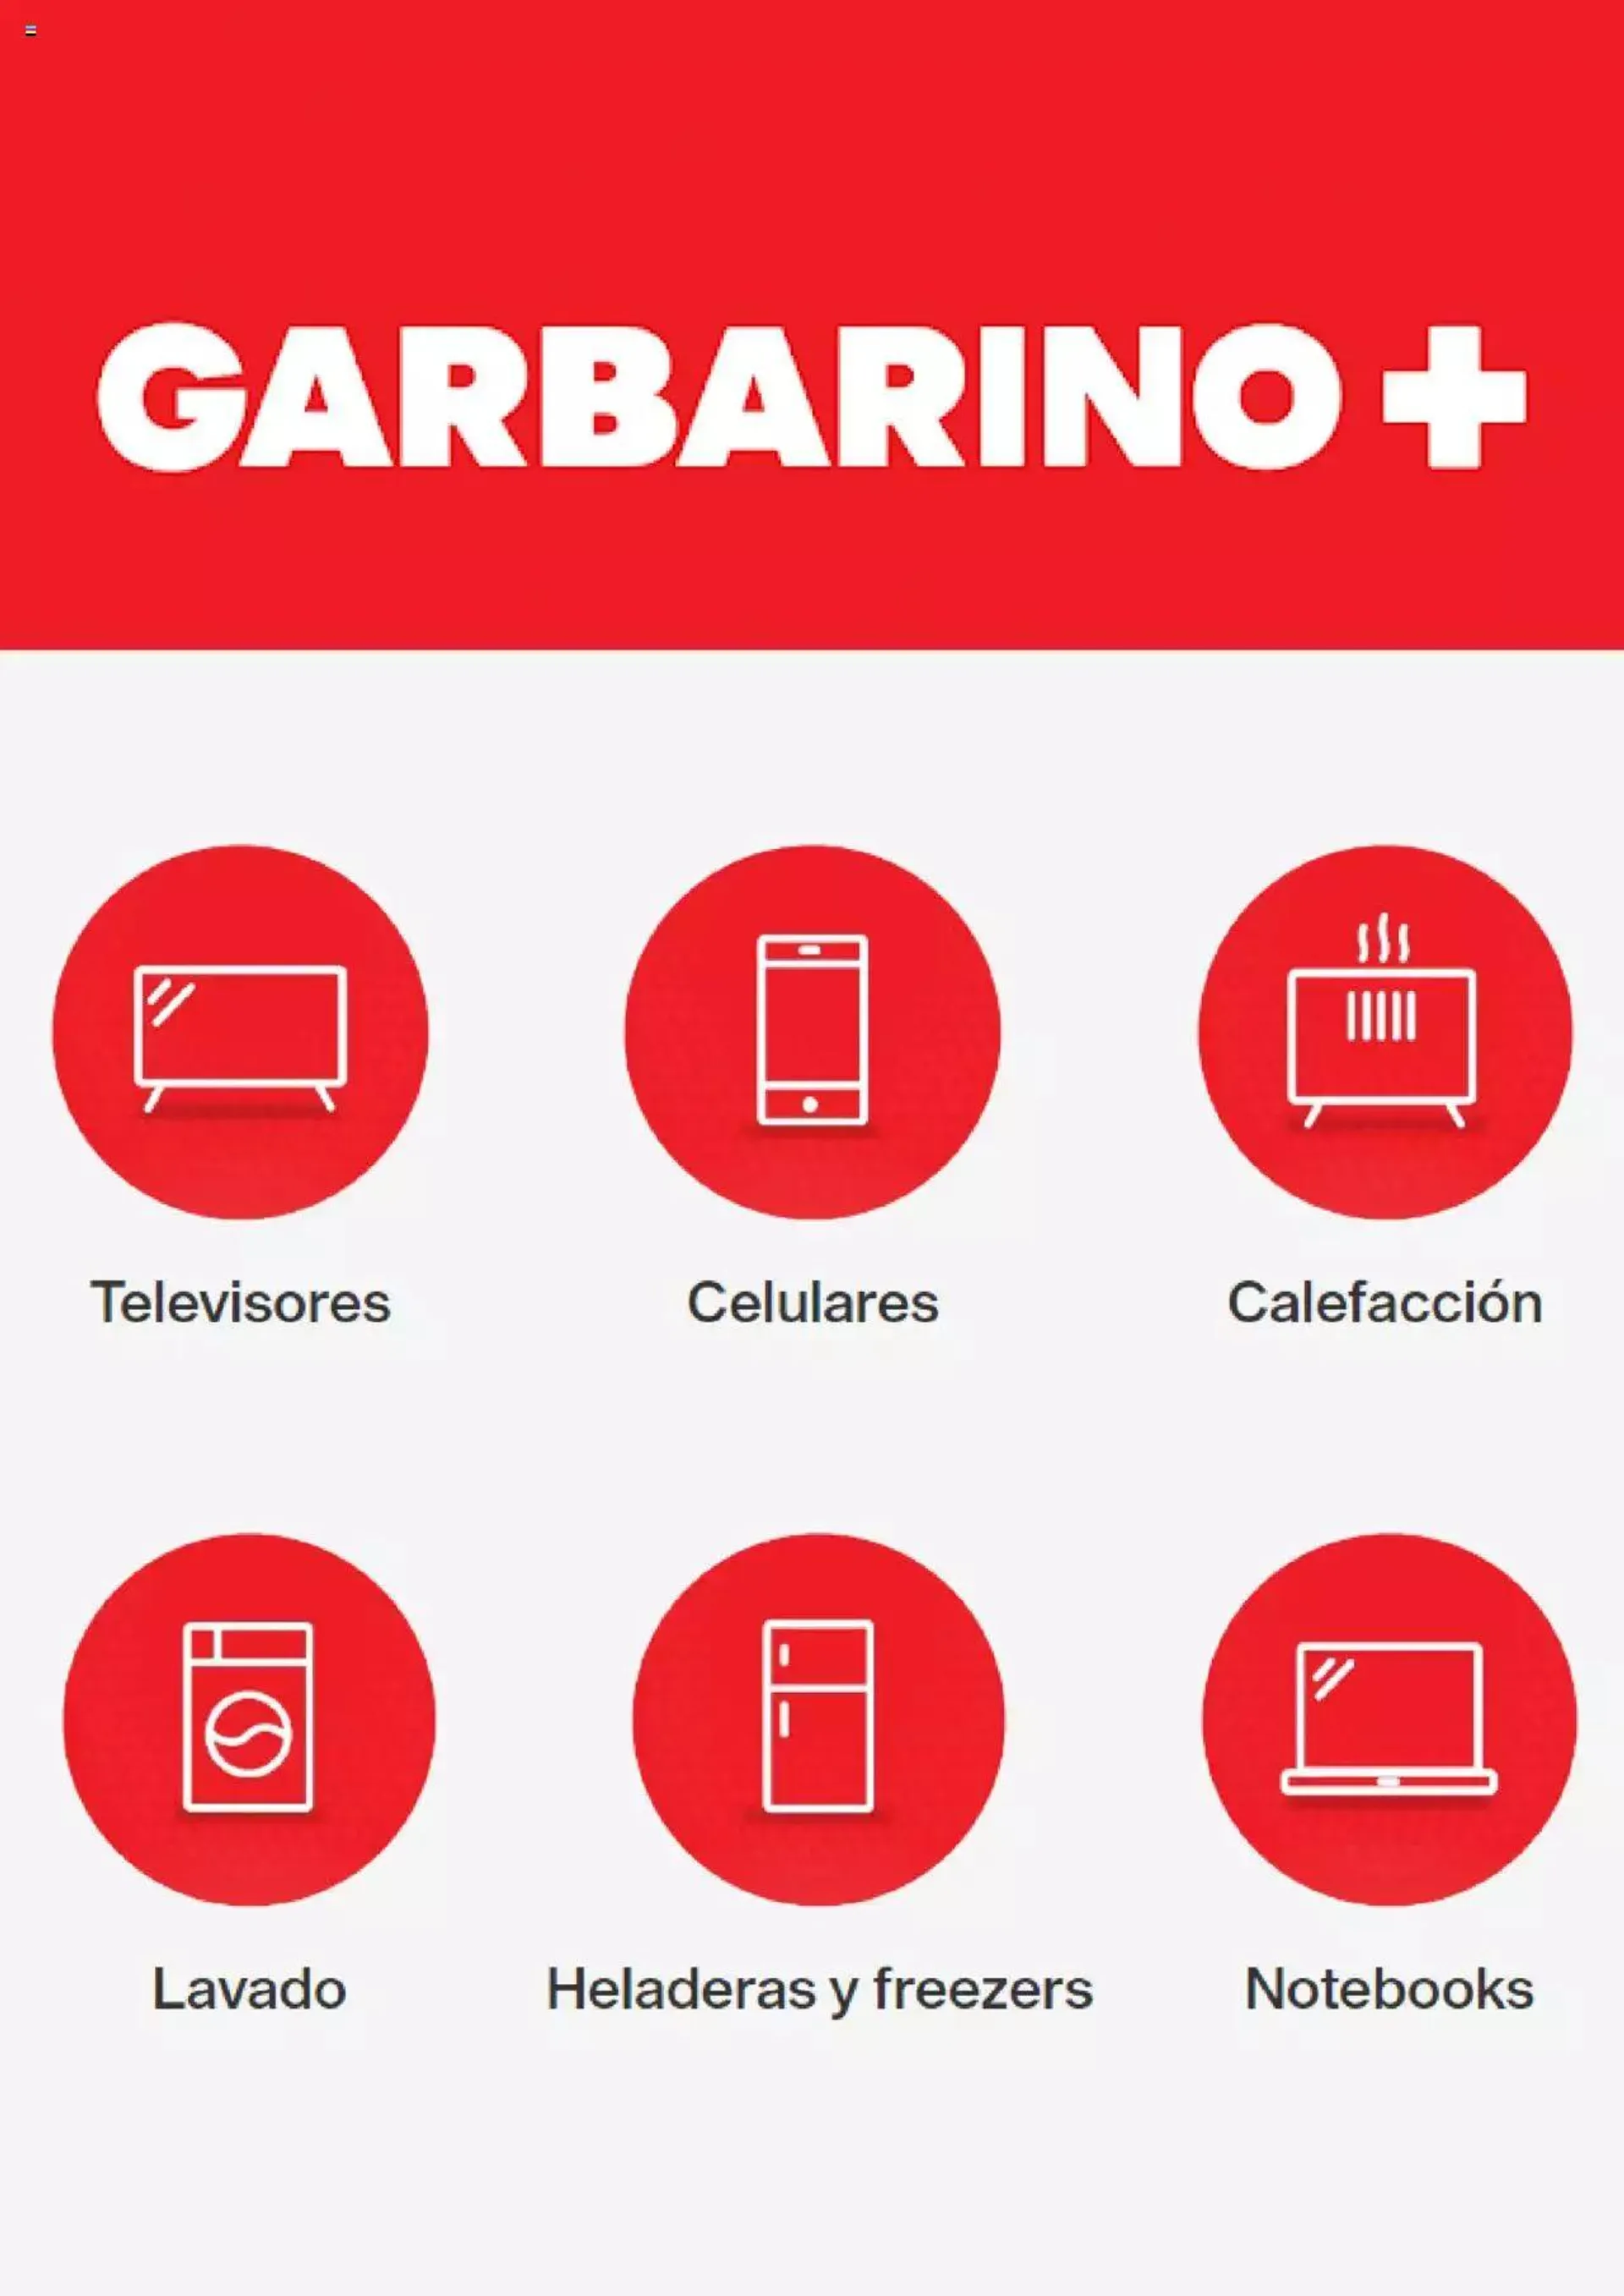 Garbarino catálogo - 0